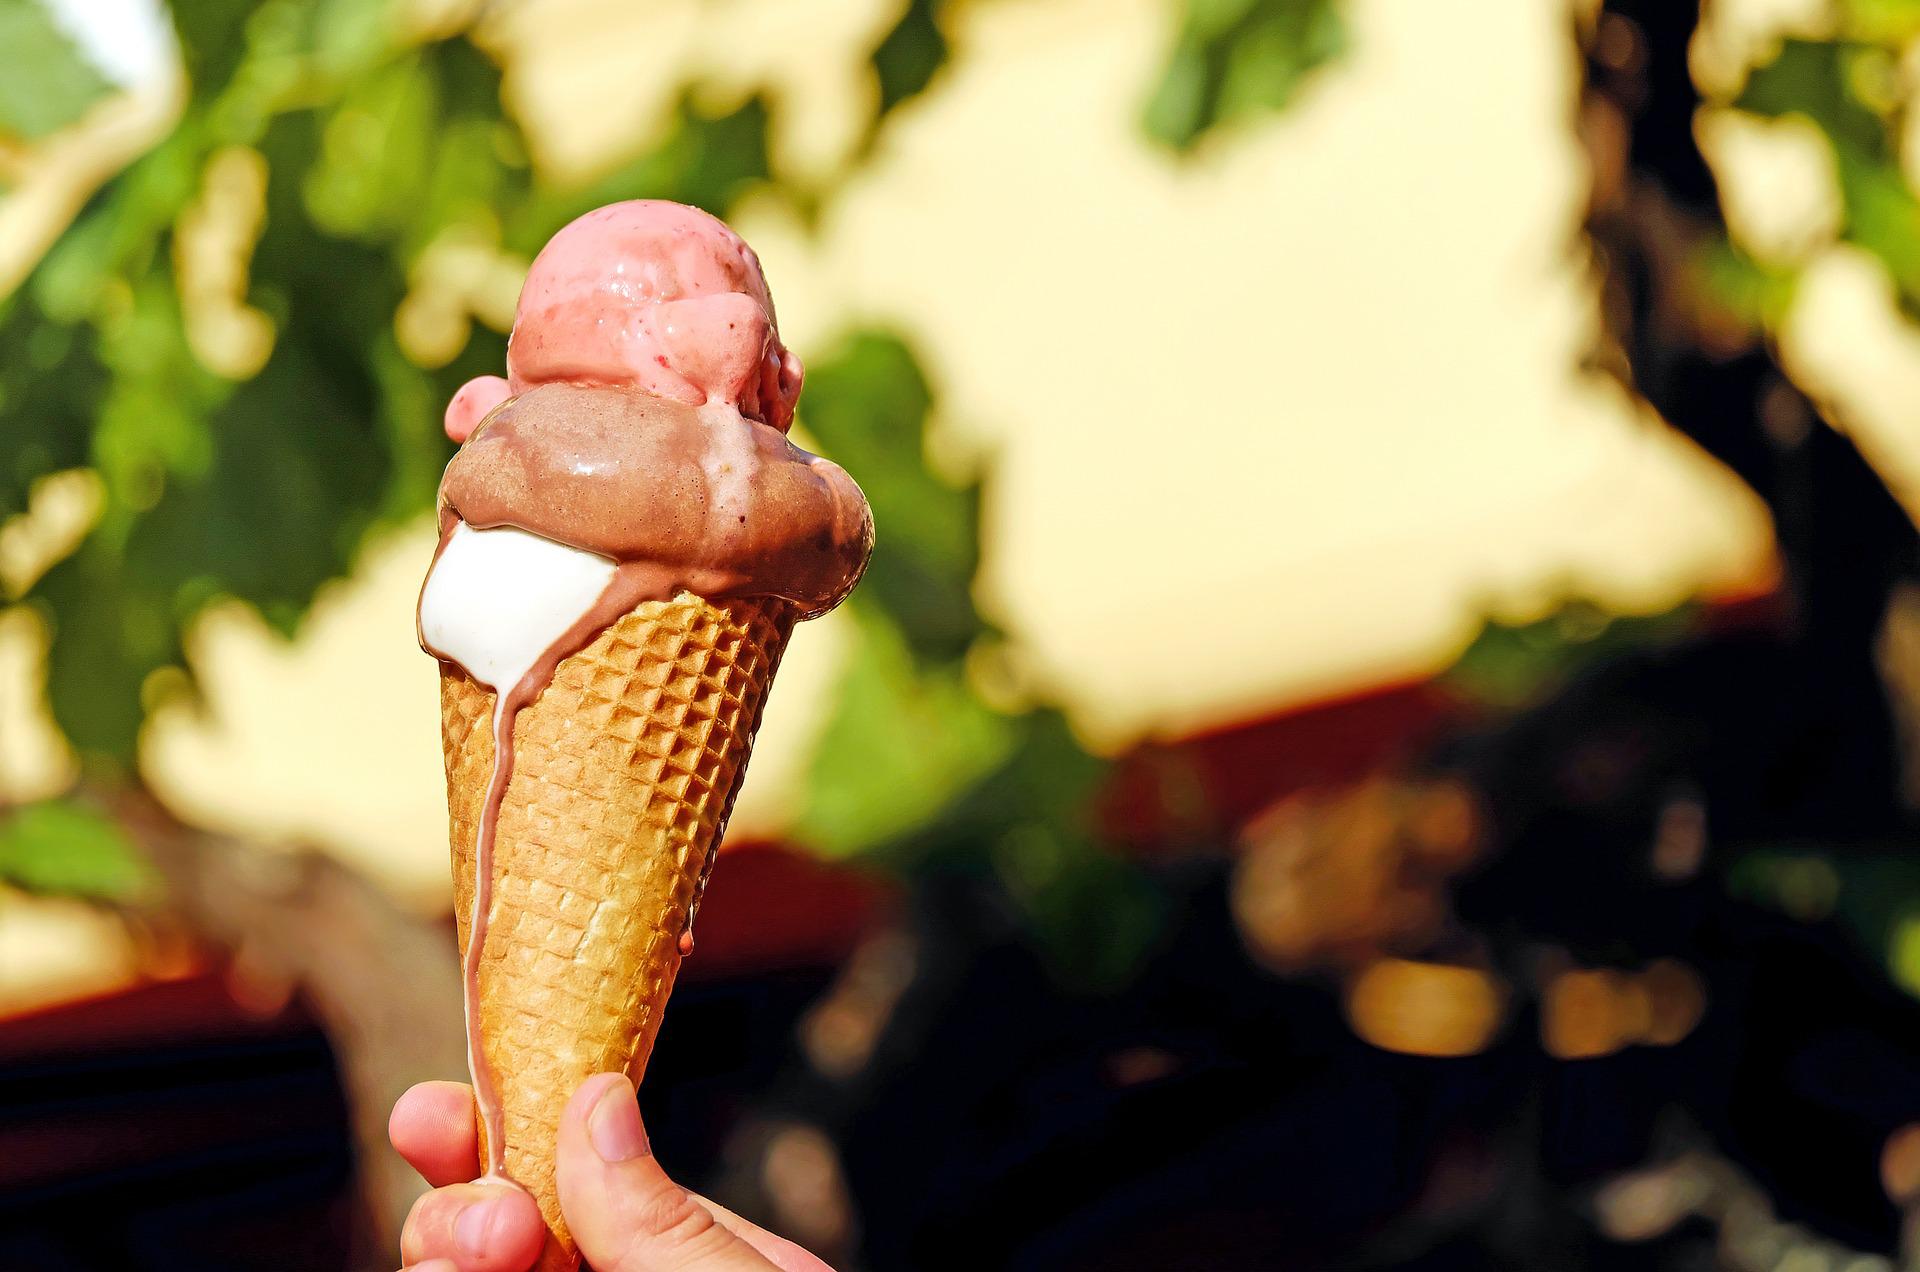 Vendas de sorvetes disparam 30% com onda de calor em Mato Grosso e outros estados do Brasil